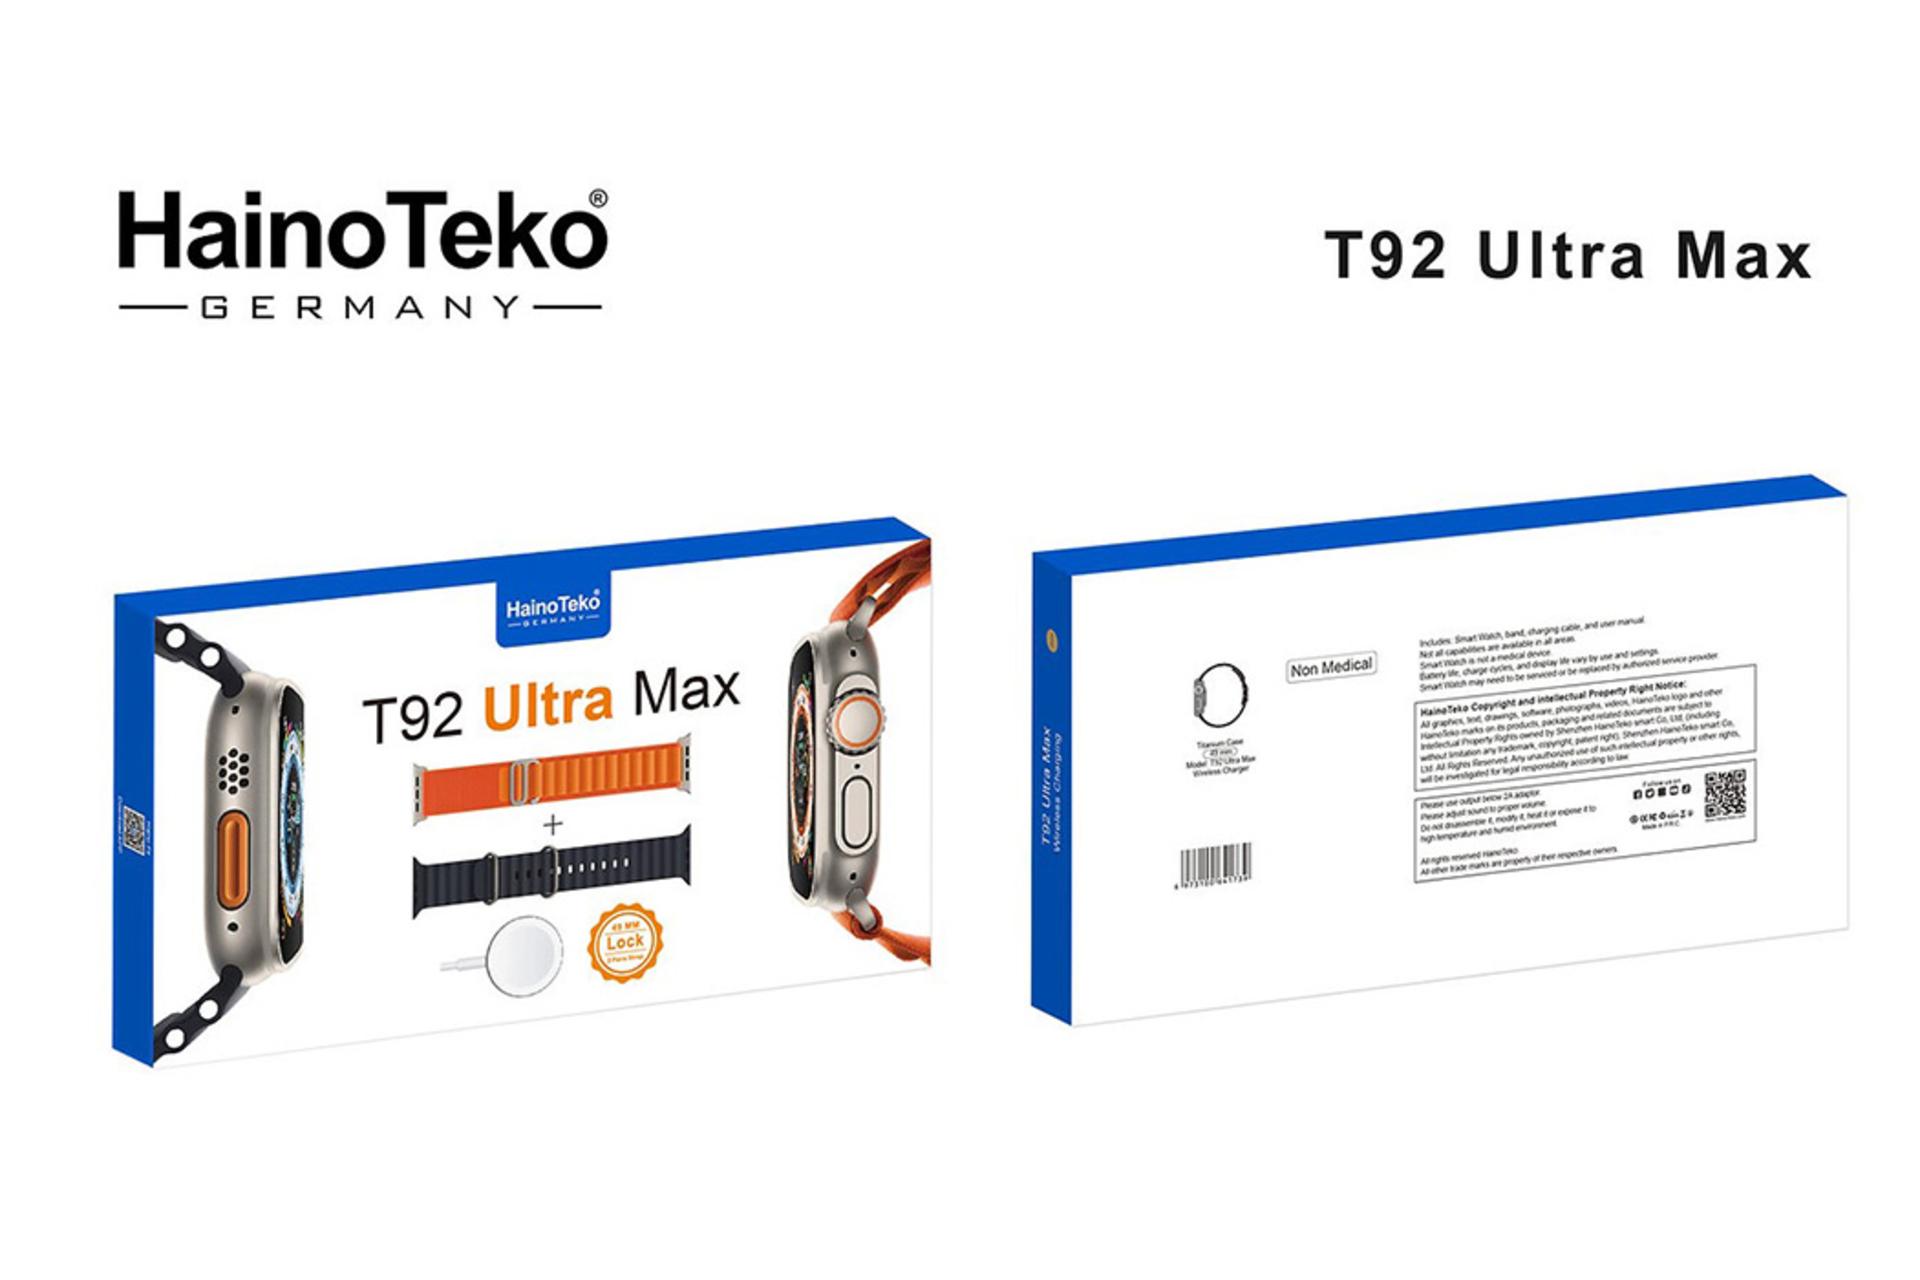 جعبه ساعت هوشمند هاینو تکو Haino Teko T92 Ultra Max